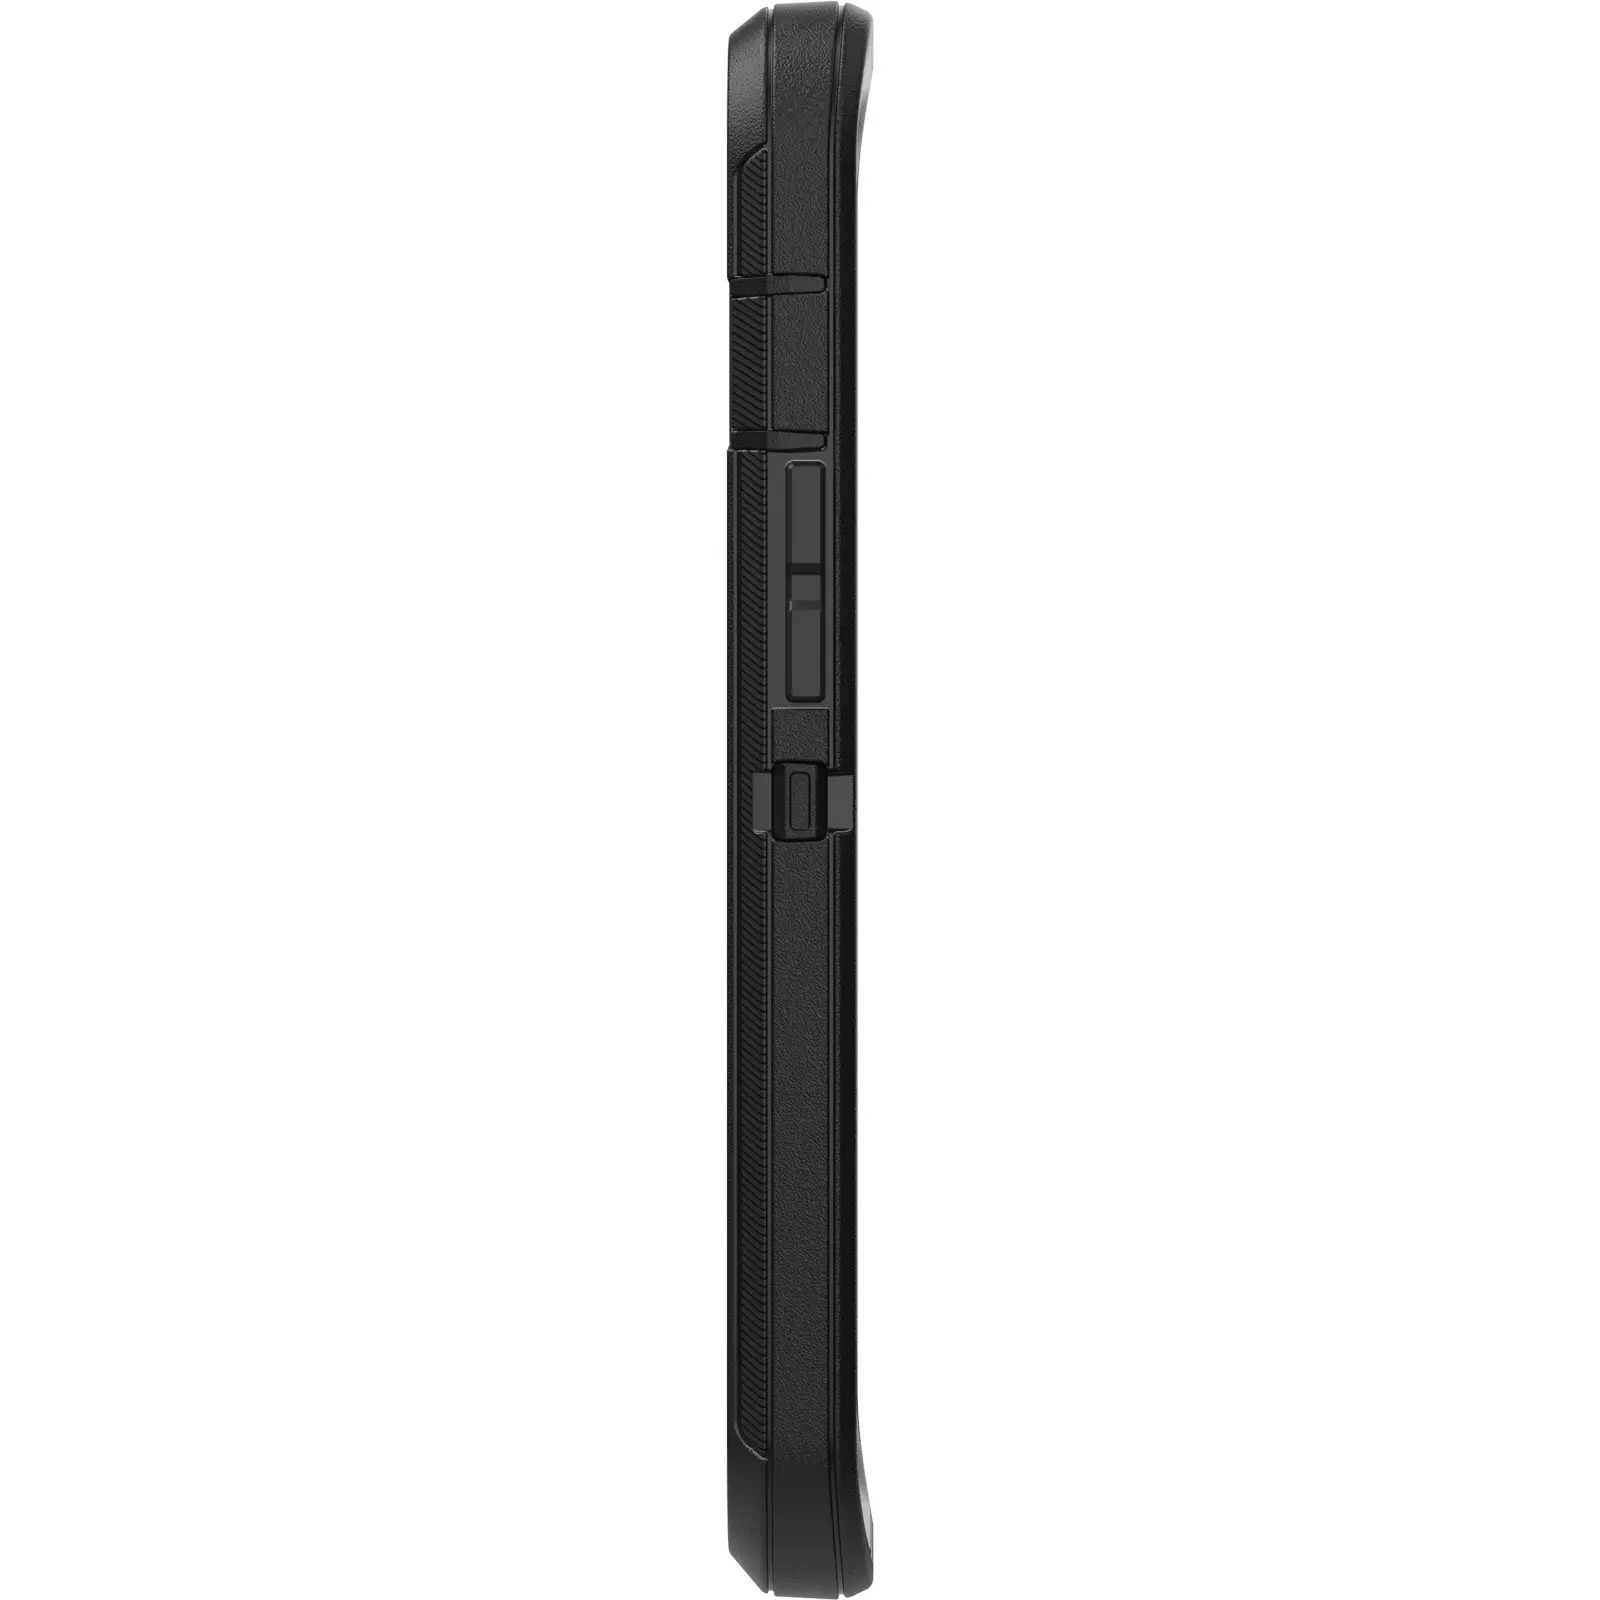 เคส OtterBox รุ่น Defender - iPhone 13 Pro - สีดำ